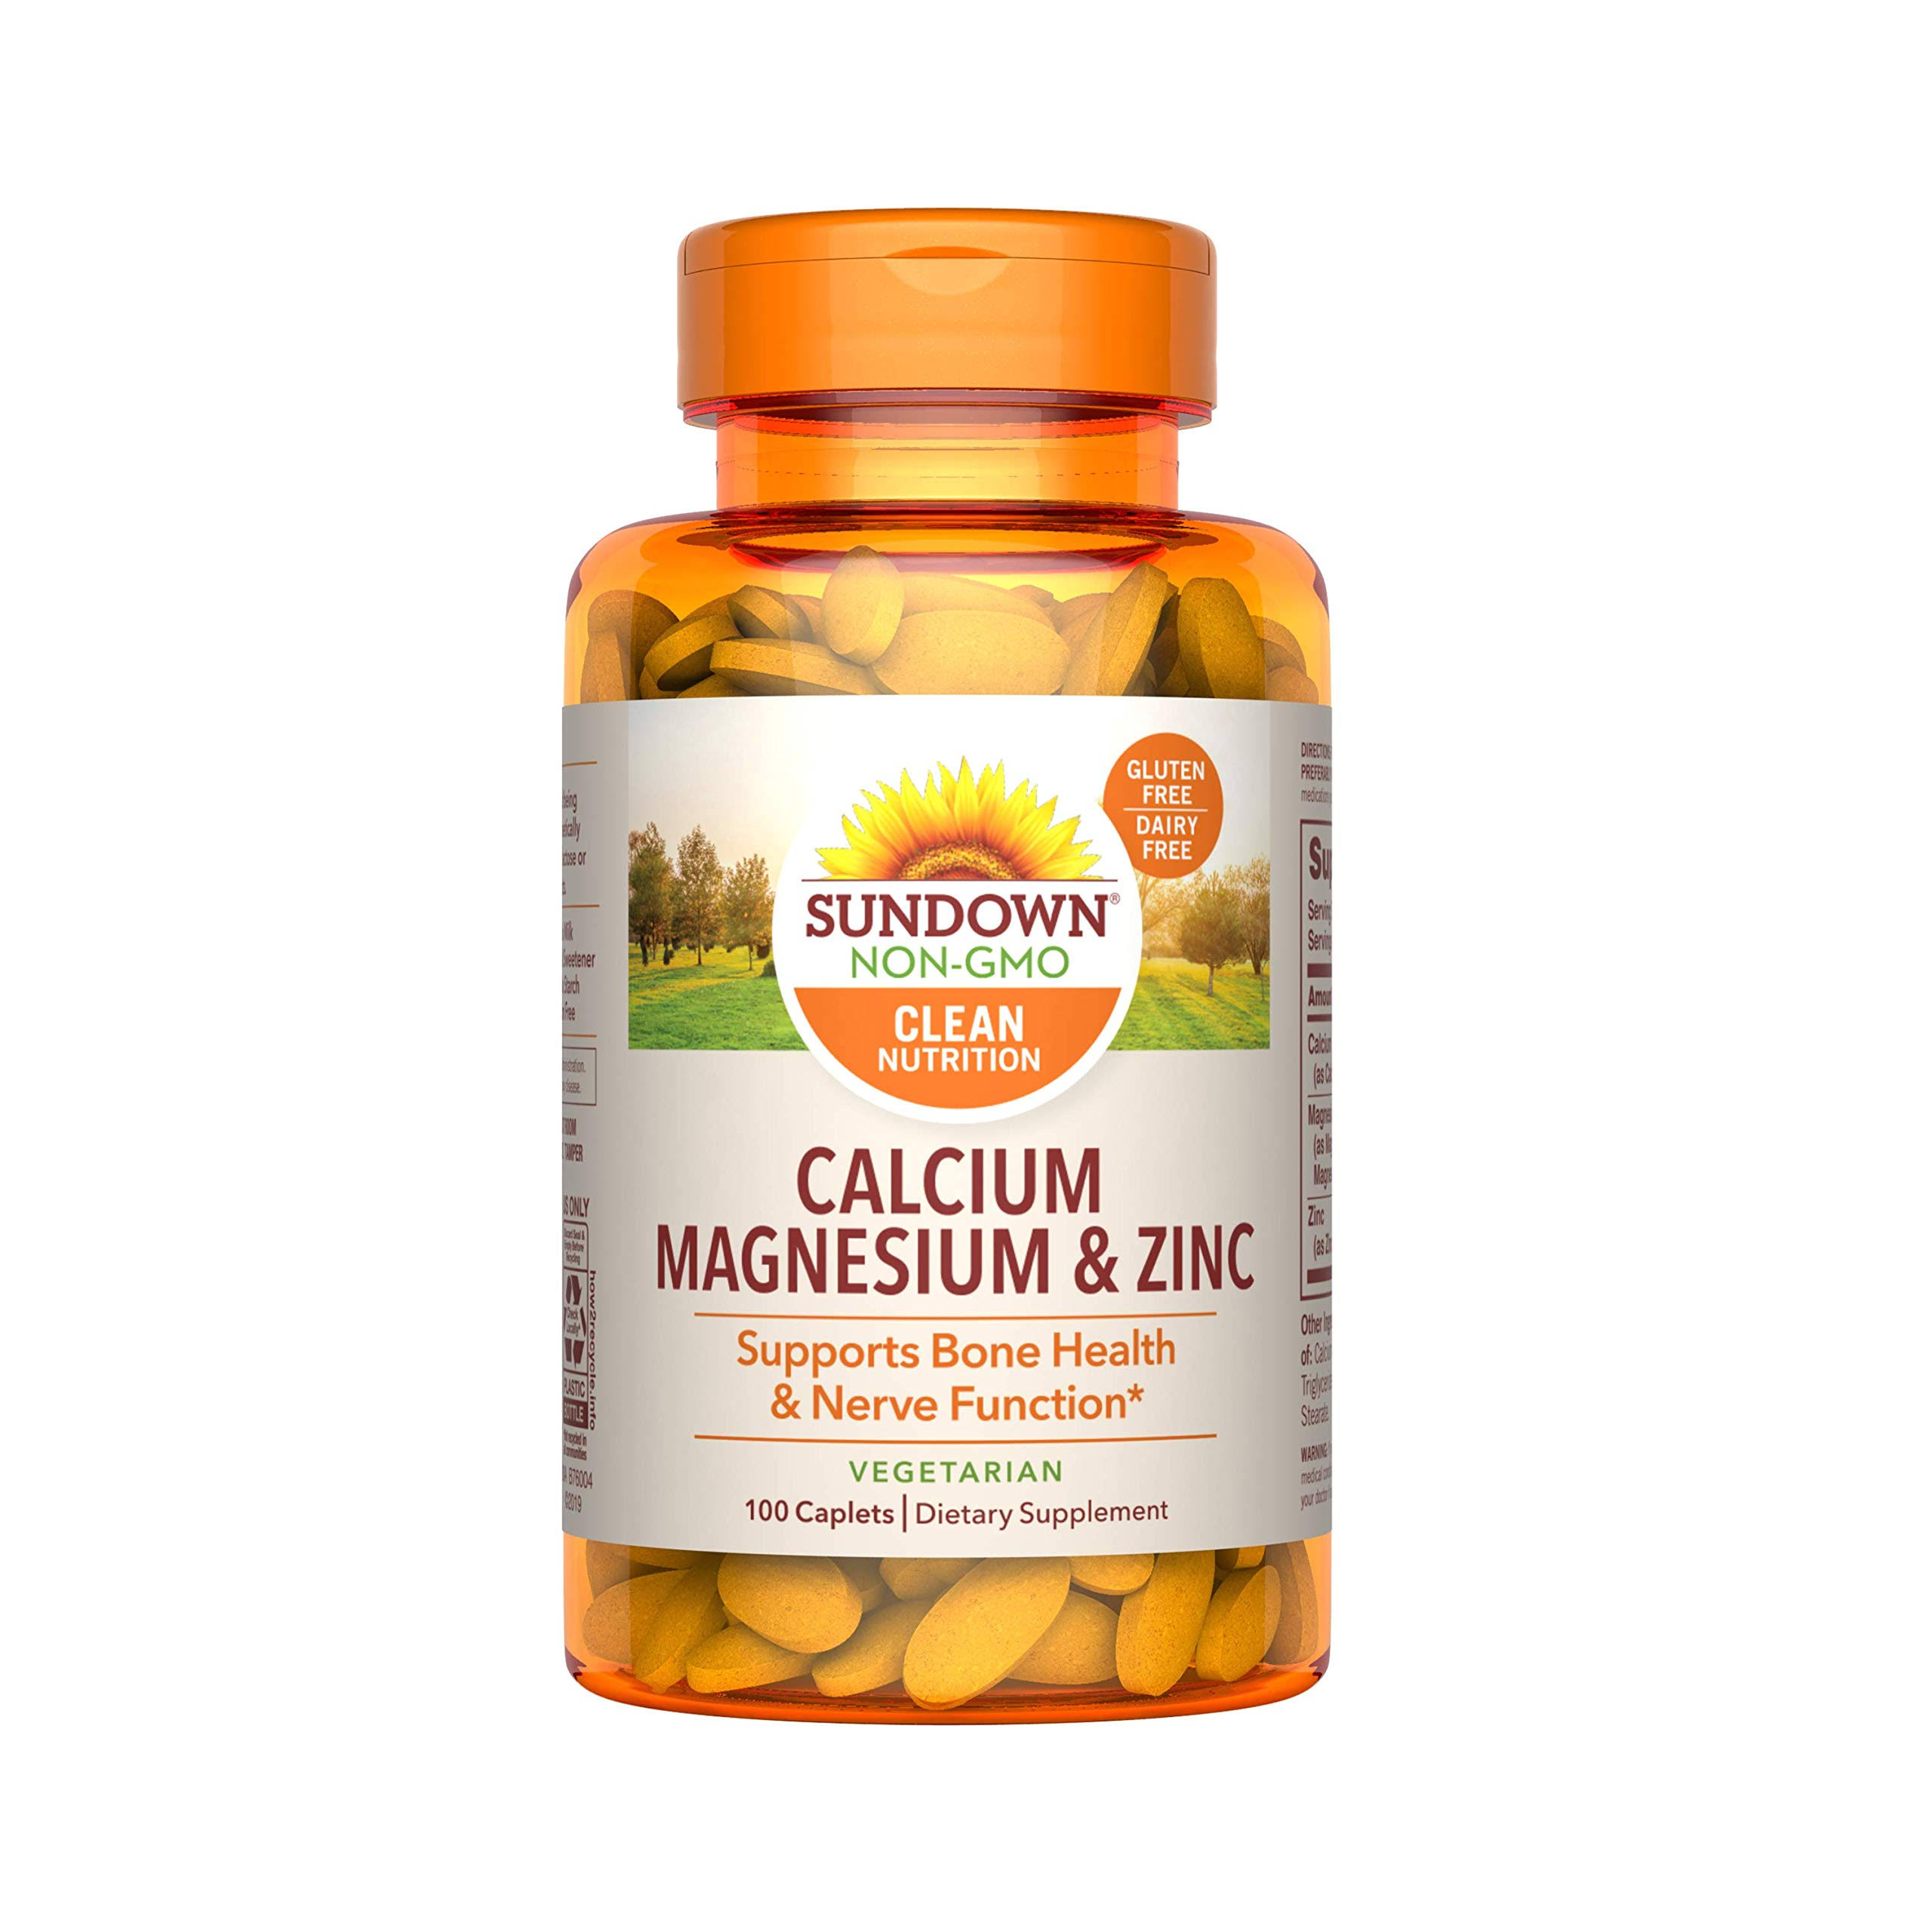 Sundown Naturals Calcium Magnesium And Zinc Supplement - 100 Caplets